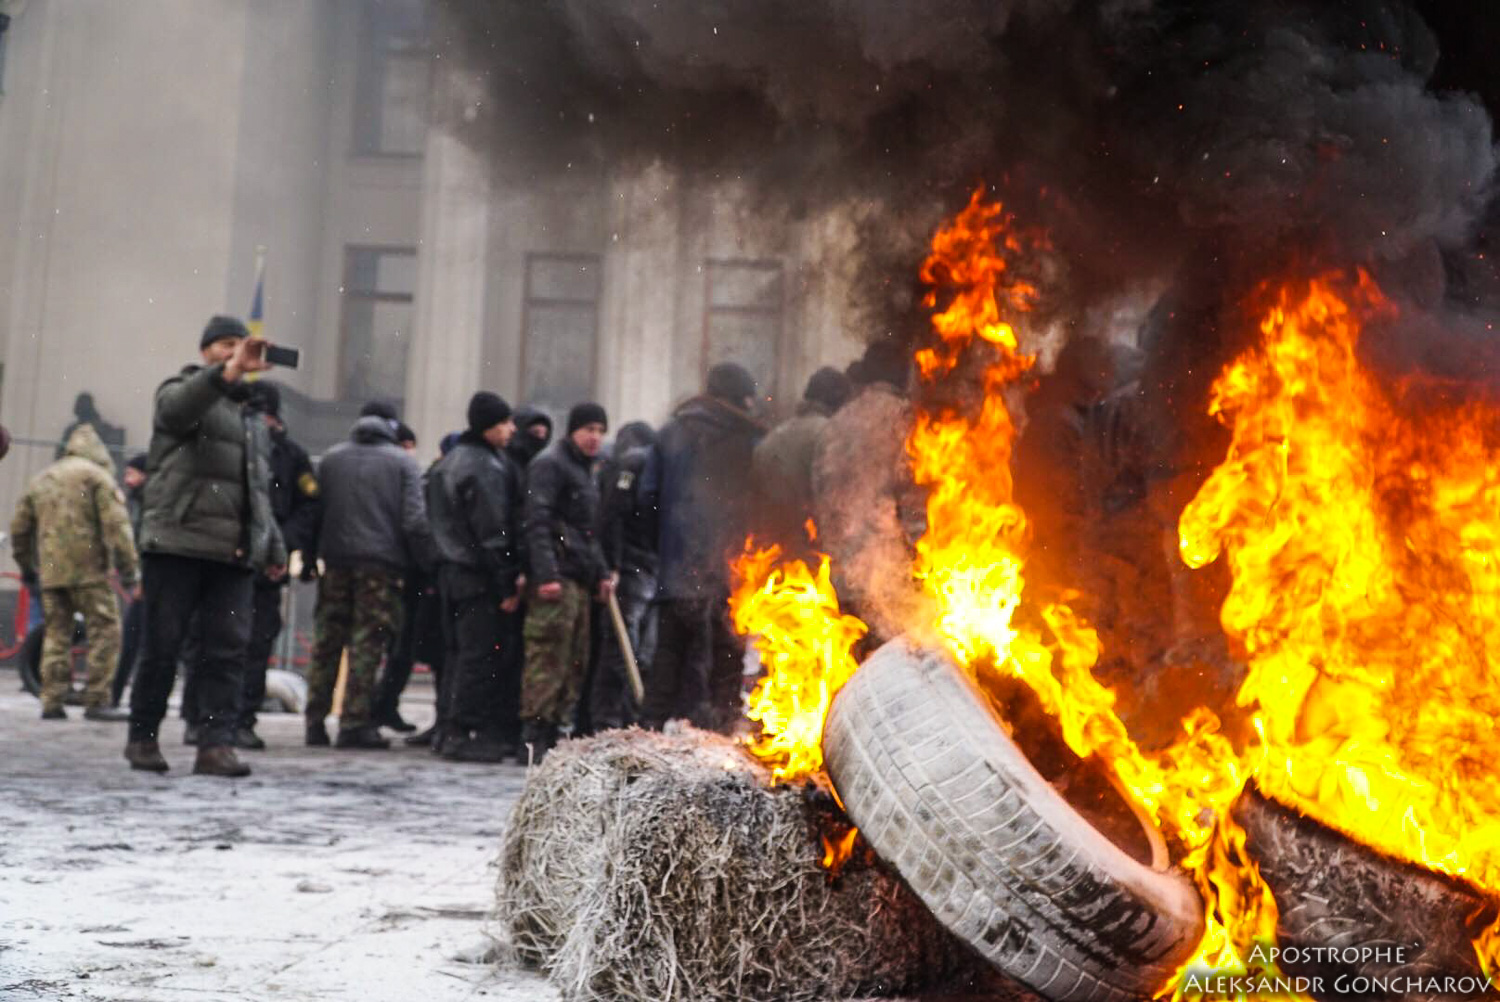 Ukraine News in brief. Tuesday 16 January. [Ukrainian sources] Fb446553efff9a28564a0e3676e0edf9